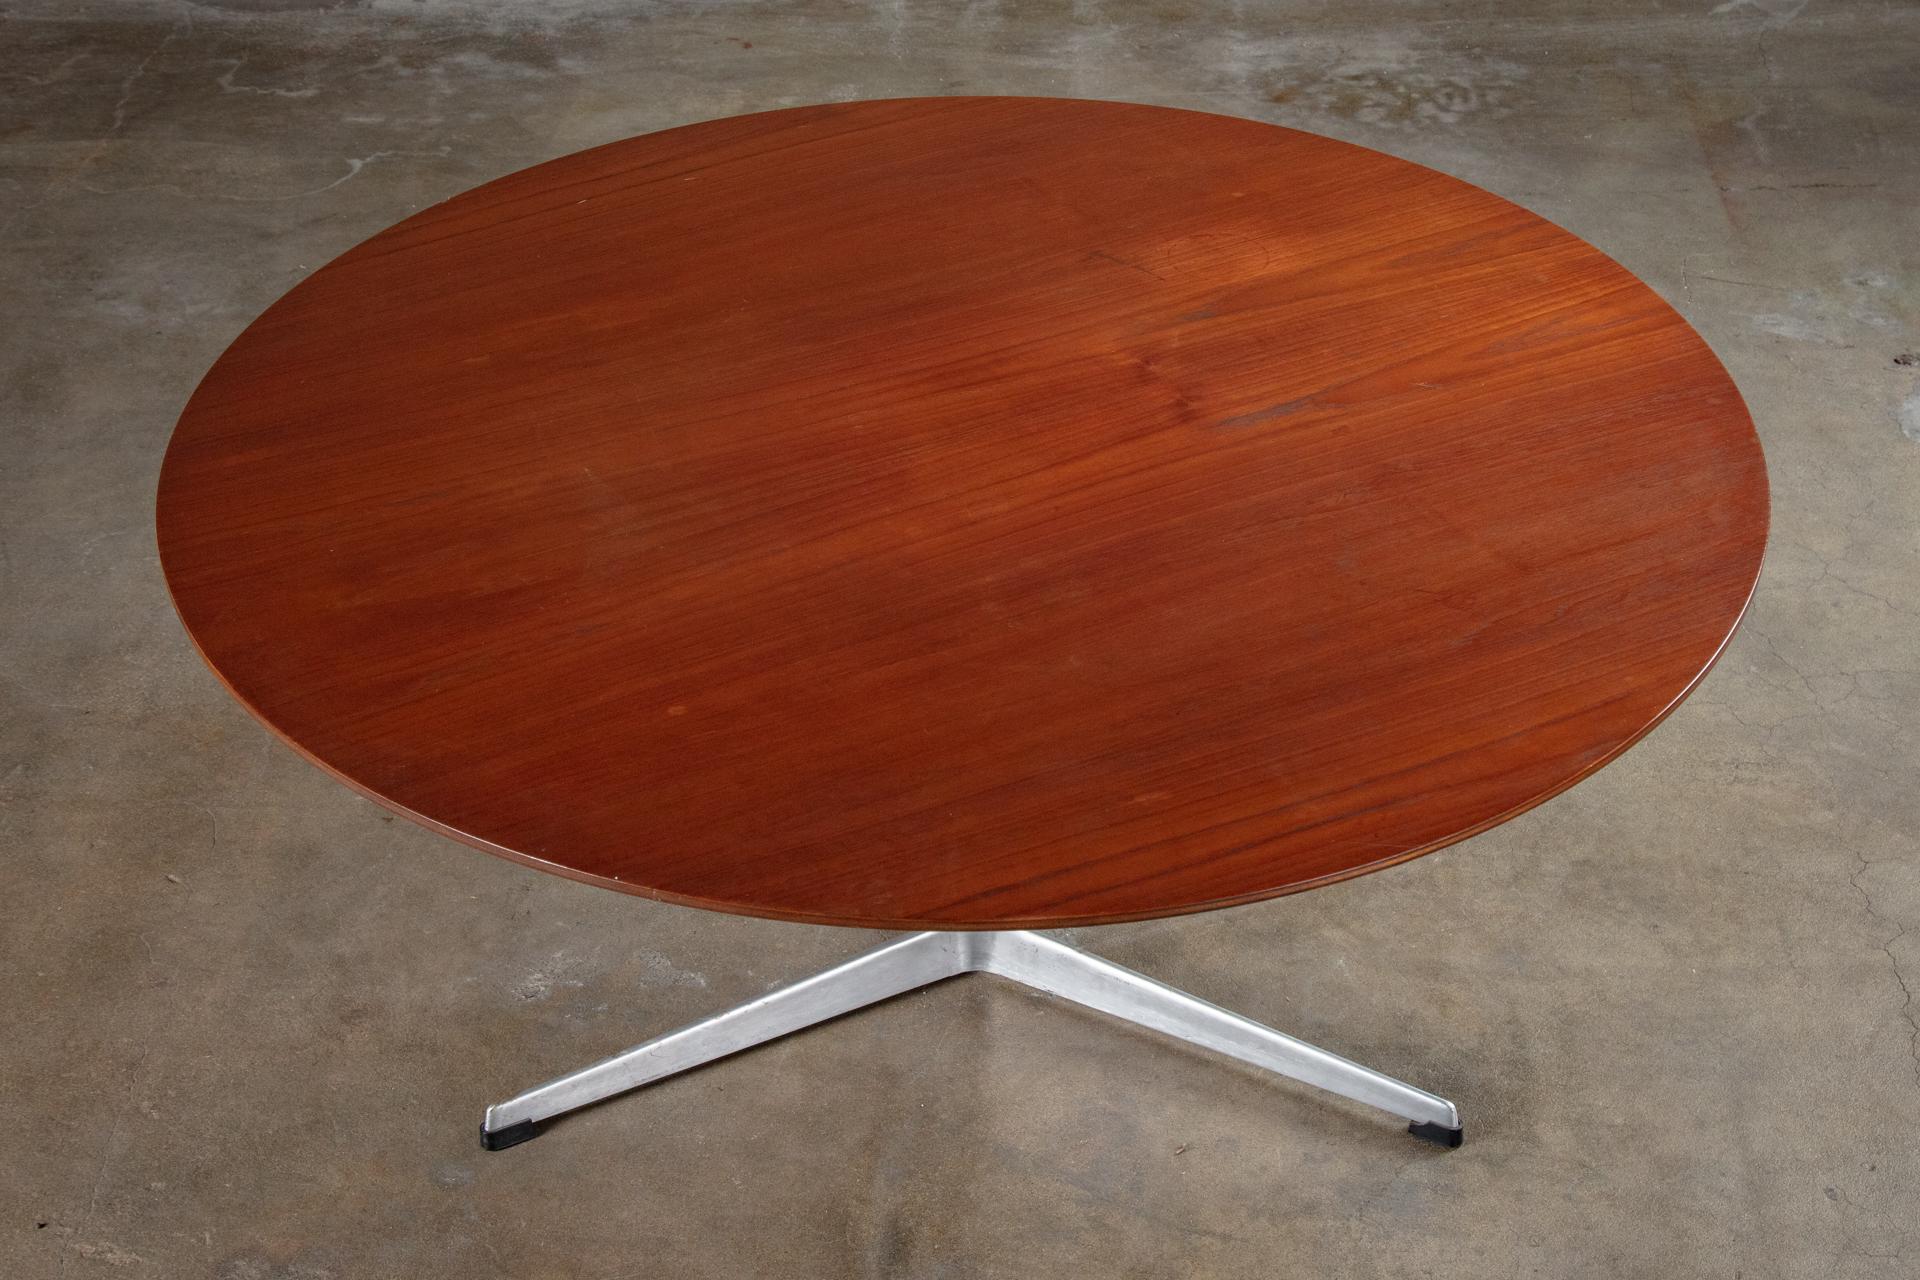 Denmark, Arne Jacobsen coffee table in teak, 1960s, chrome base.